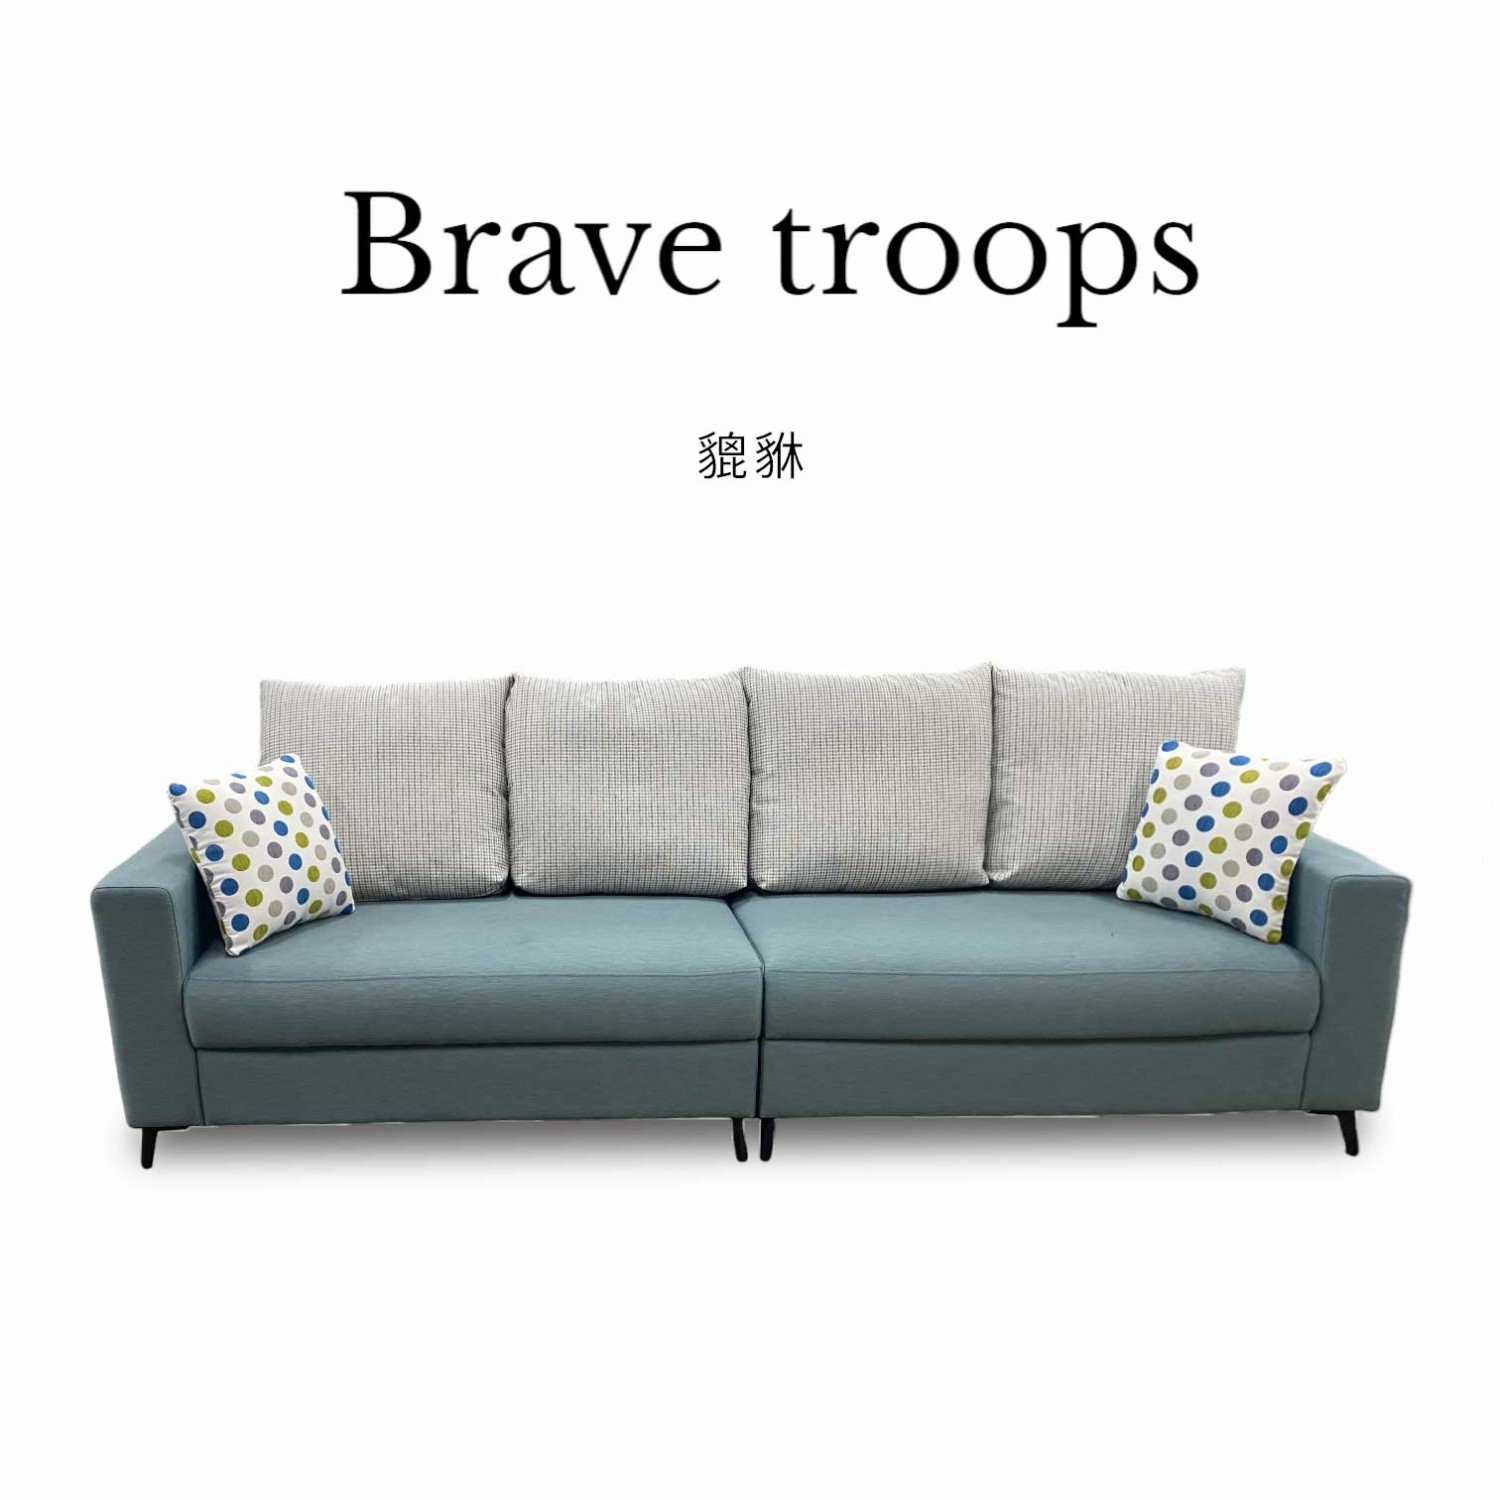 貔貅 Brave troops